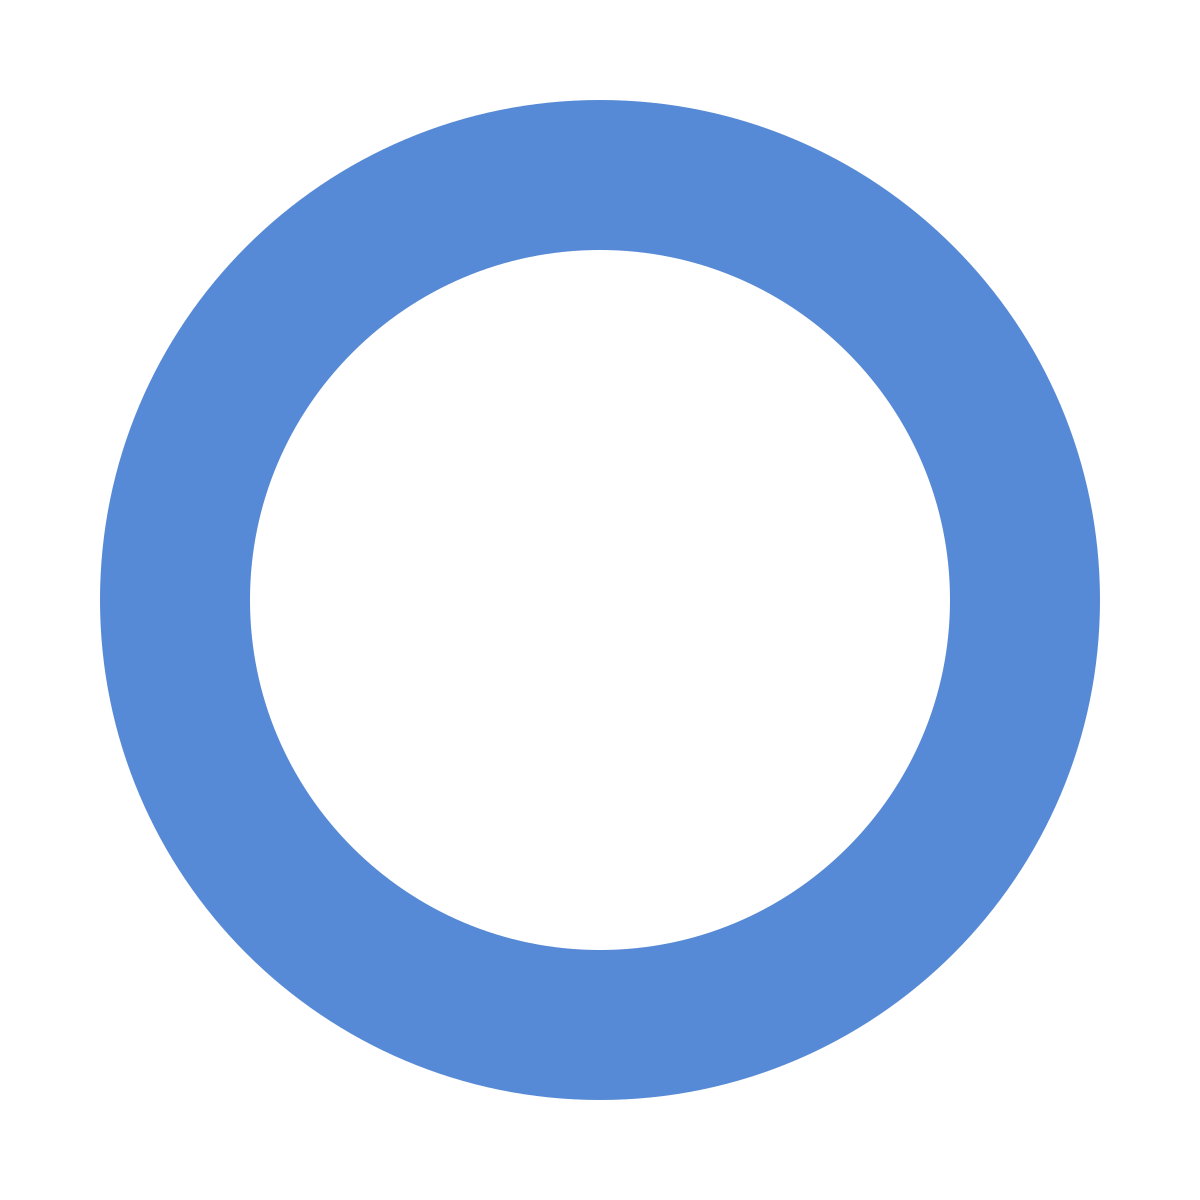 Z in Blue Circle Logo - Diabetes mellitus